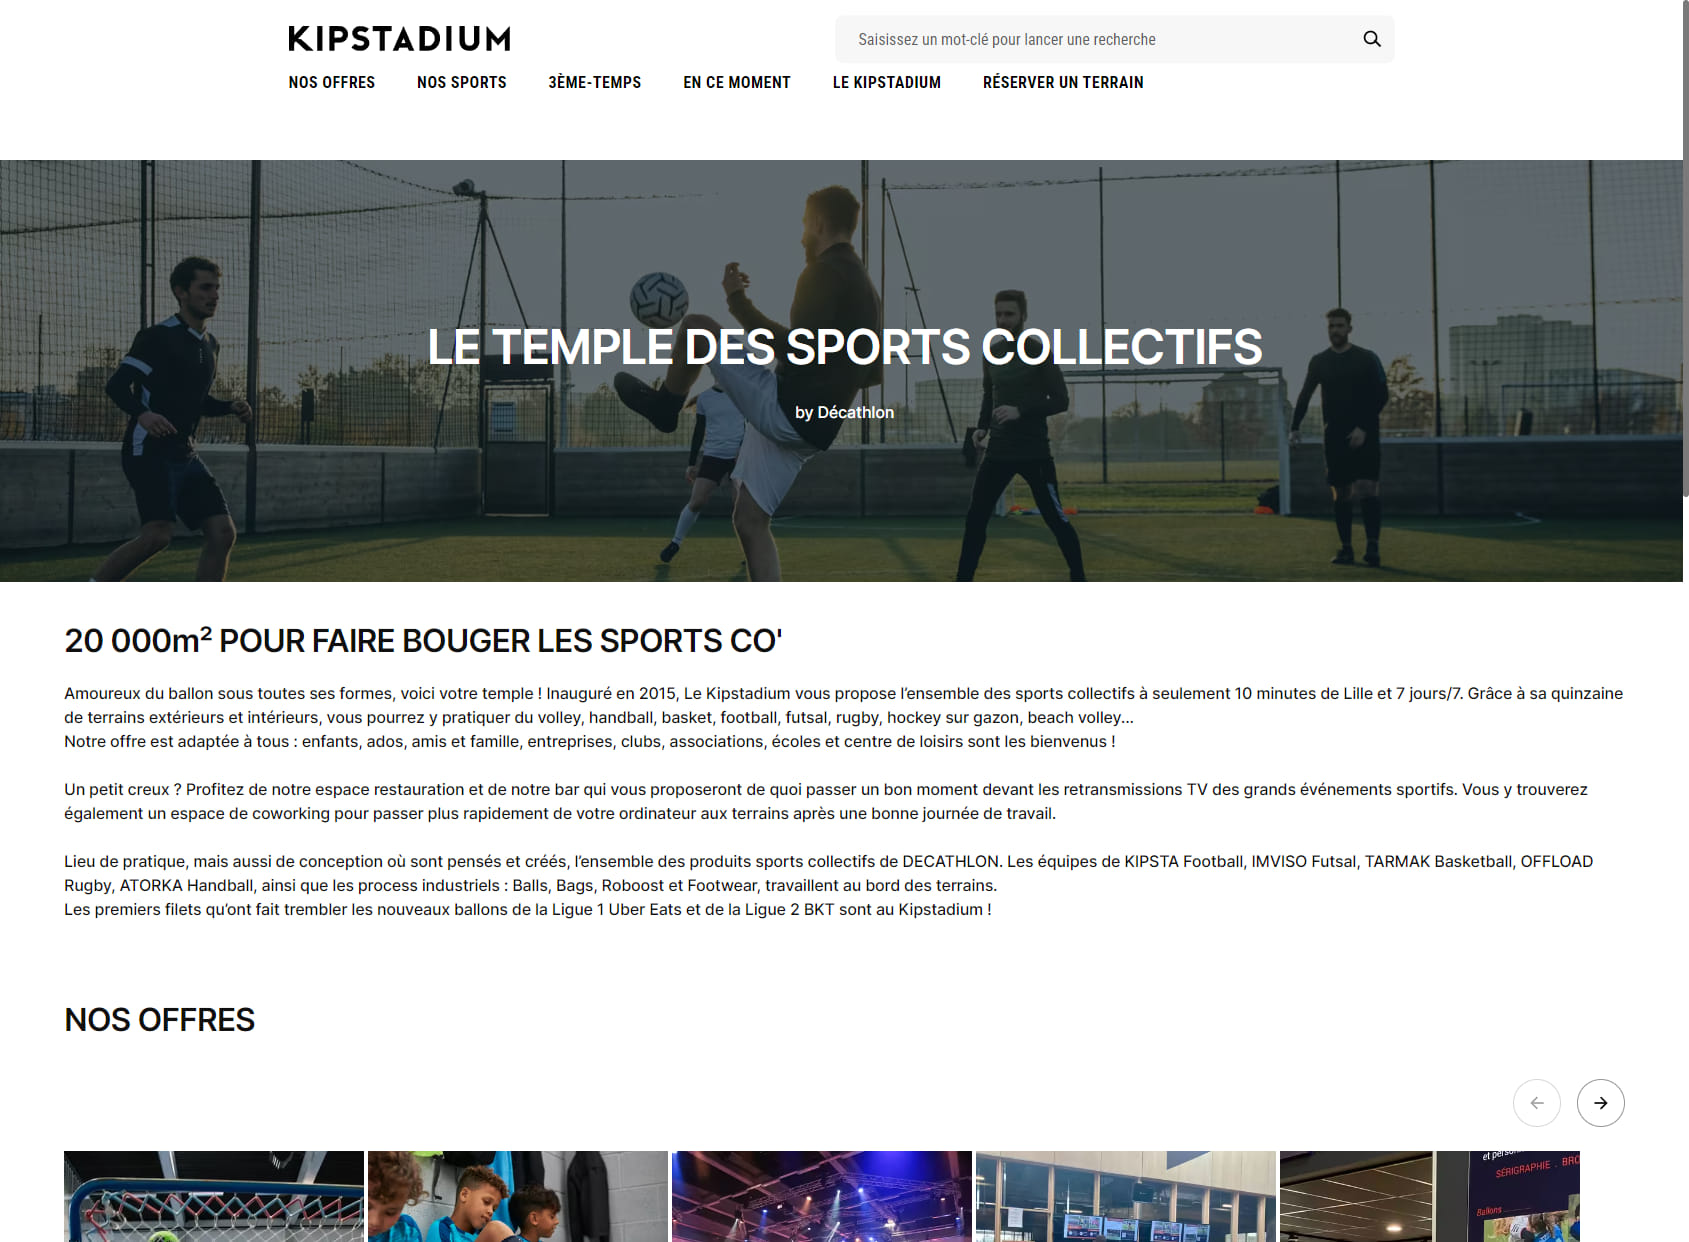 KIPSTADIUM : Complexe sportif dédié aux Sports Collectifs